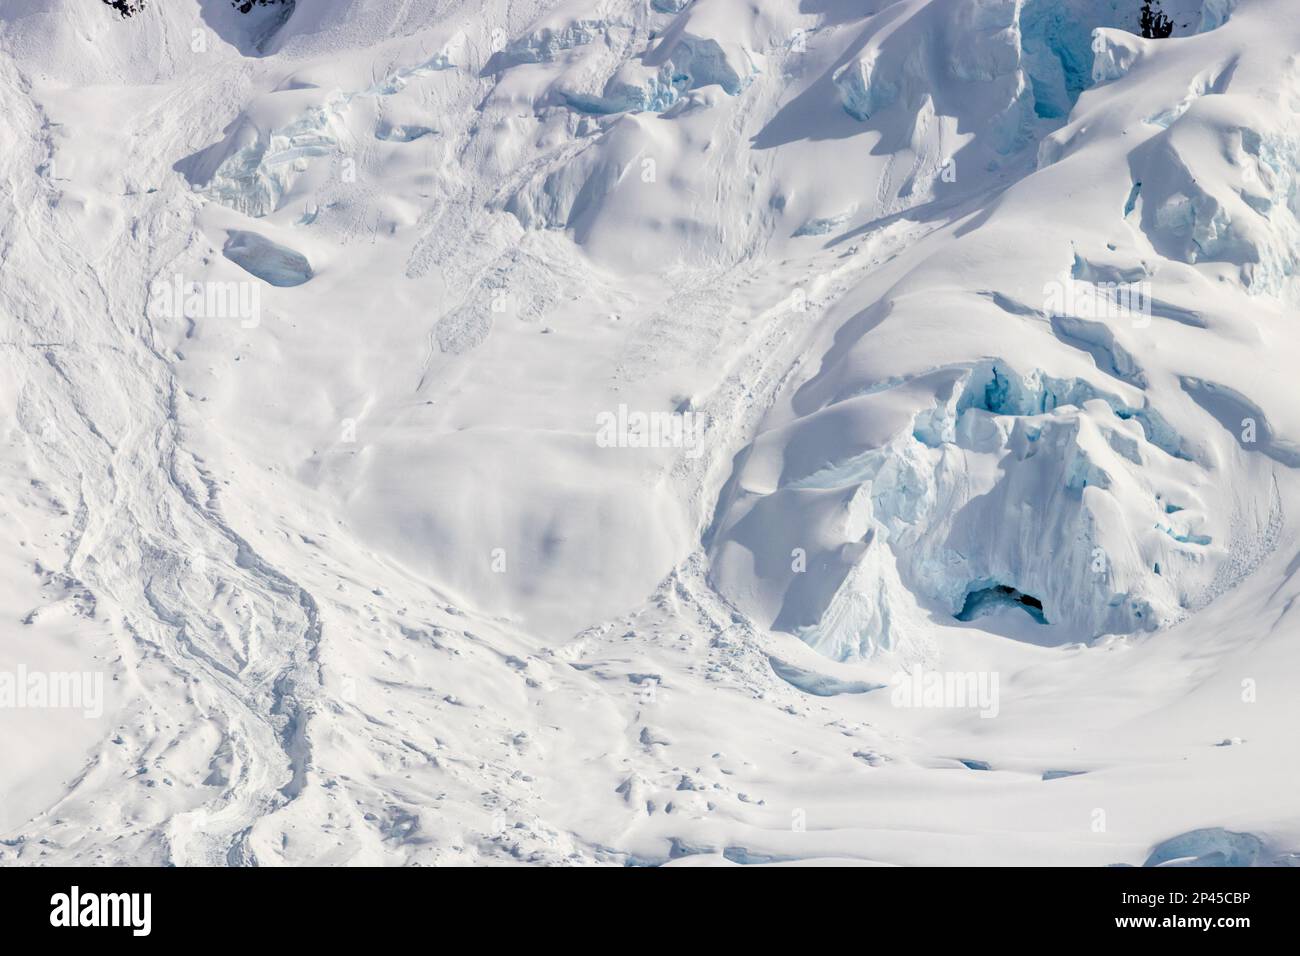 Pente de montagne enneigée, péninsule antarctique. Roches exposées sur une pente enneigée. Glace bleue visible ; ouverture à la grotte de glace. Banque D'Images